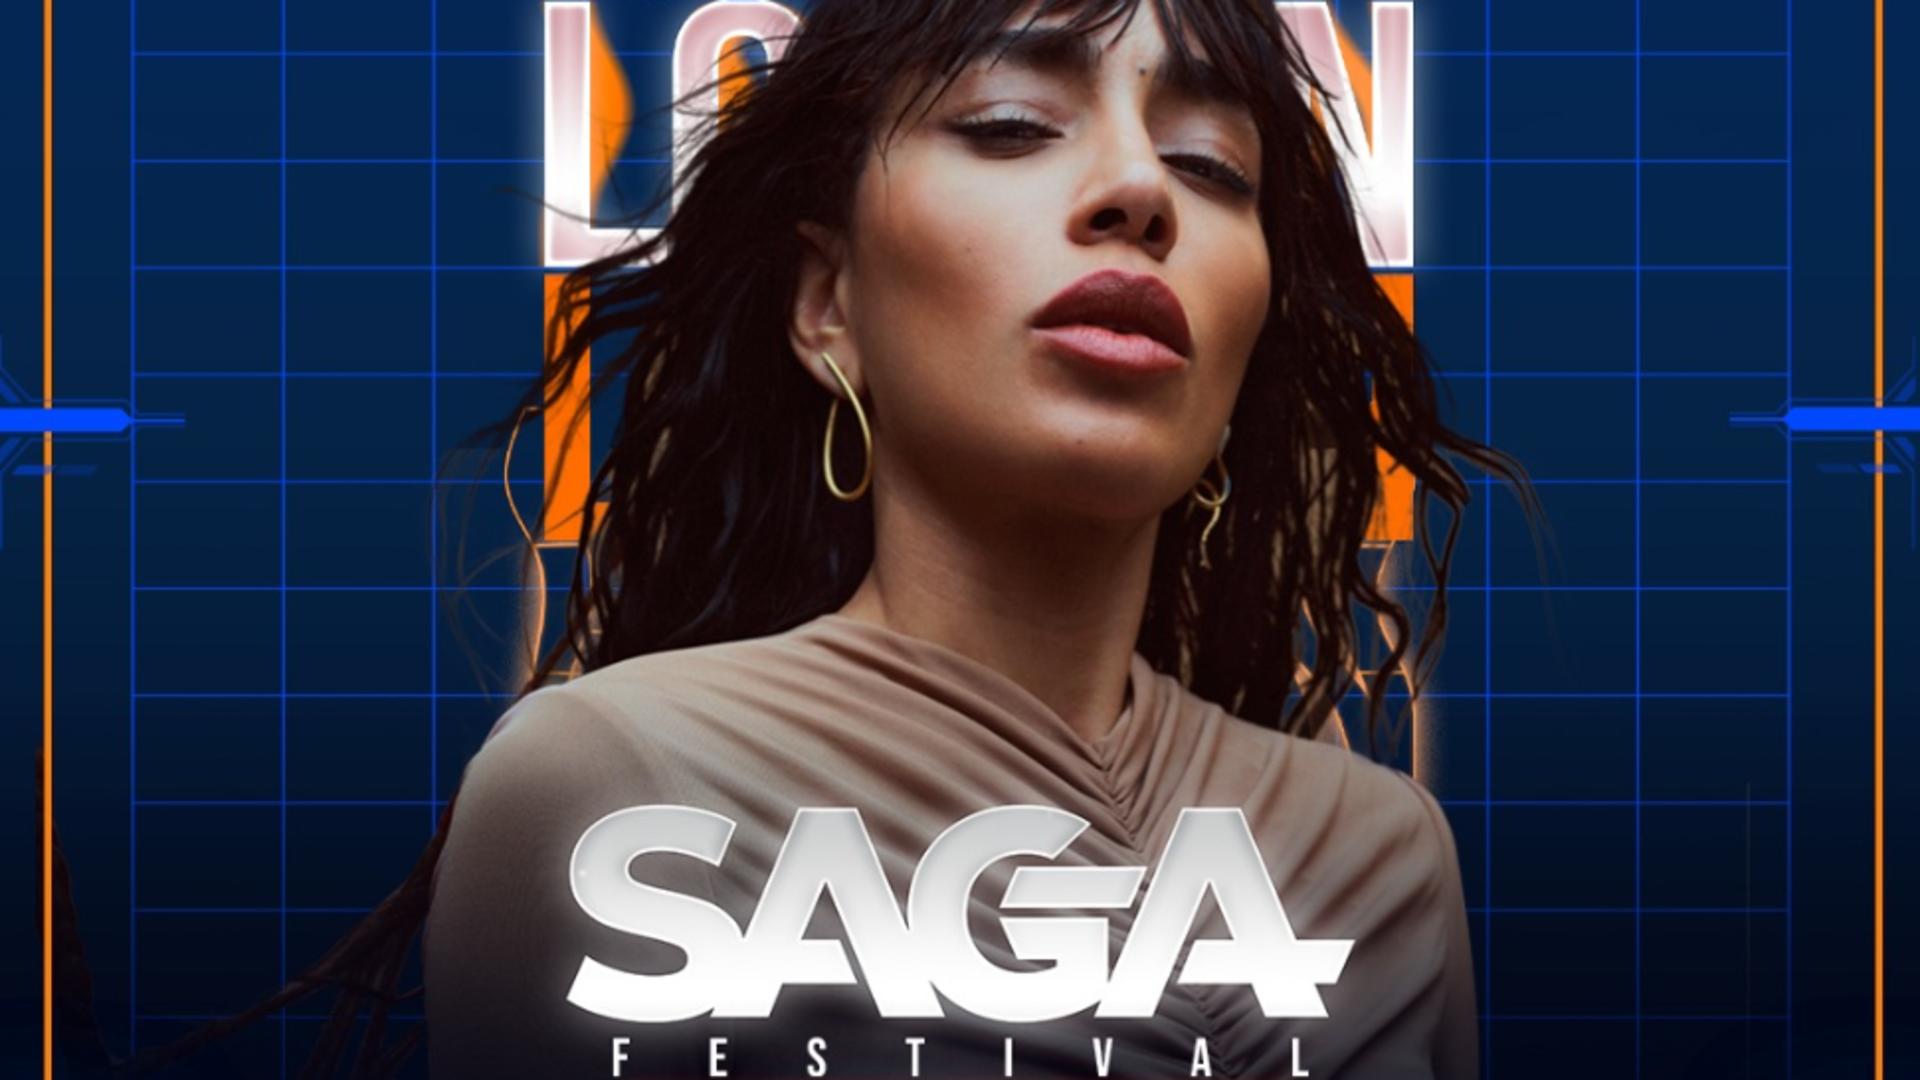 SAGA Festival – RECORD de bilete vândute și extinderea spațiului de festival. Loreen, câștigătoarea Eurovision 2012 și 2023, se alătură line-up-ului SAGA